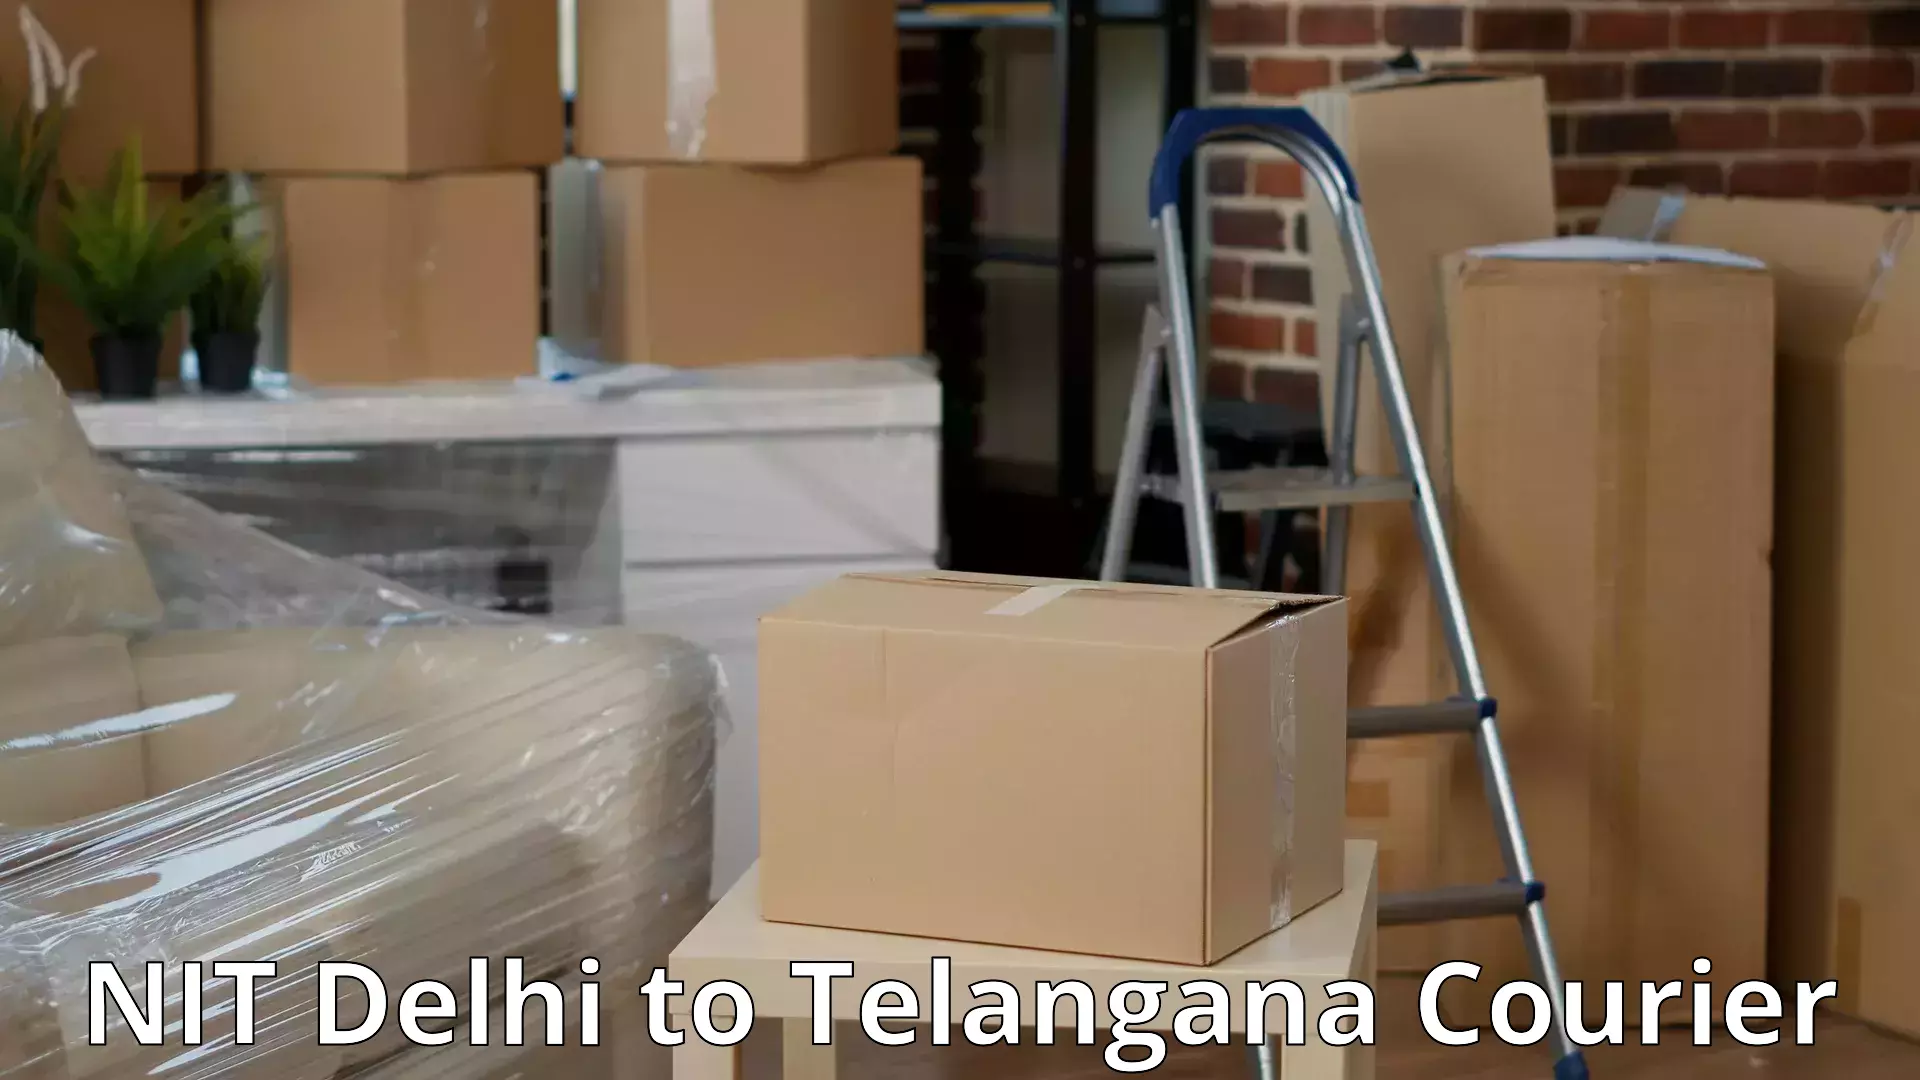 Furniture transport specialists NIT Delhi to Marikal